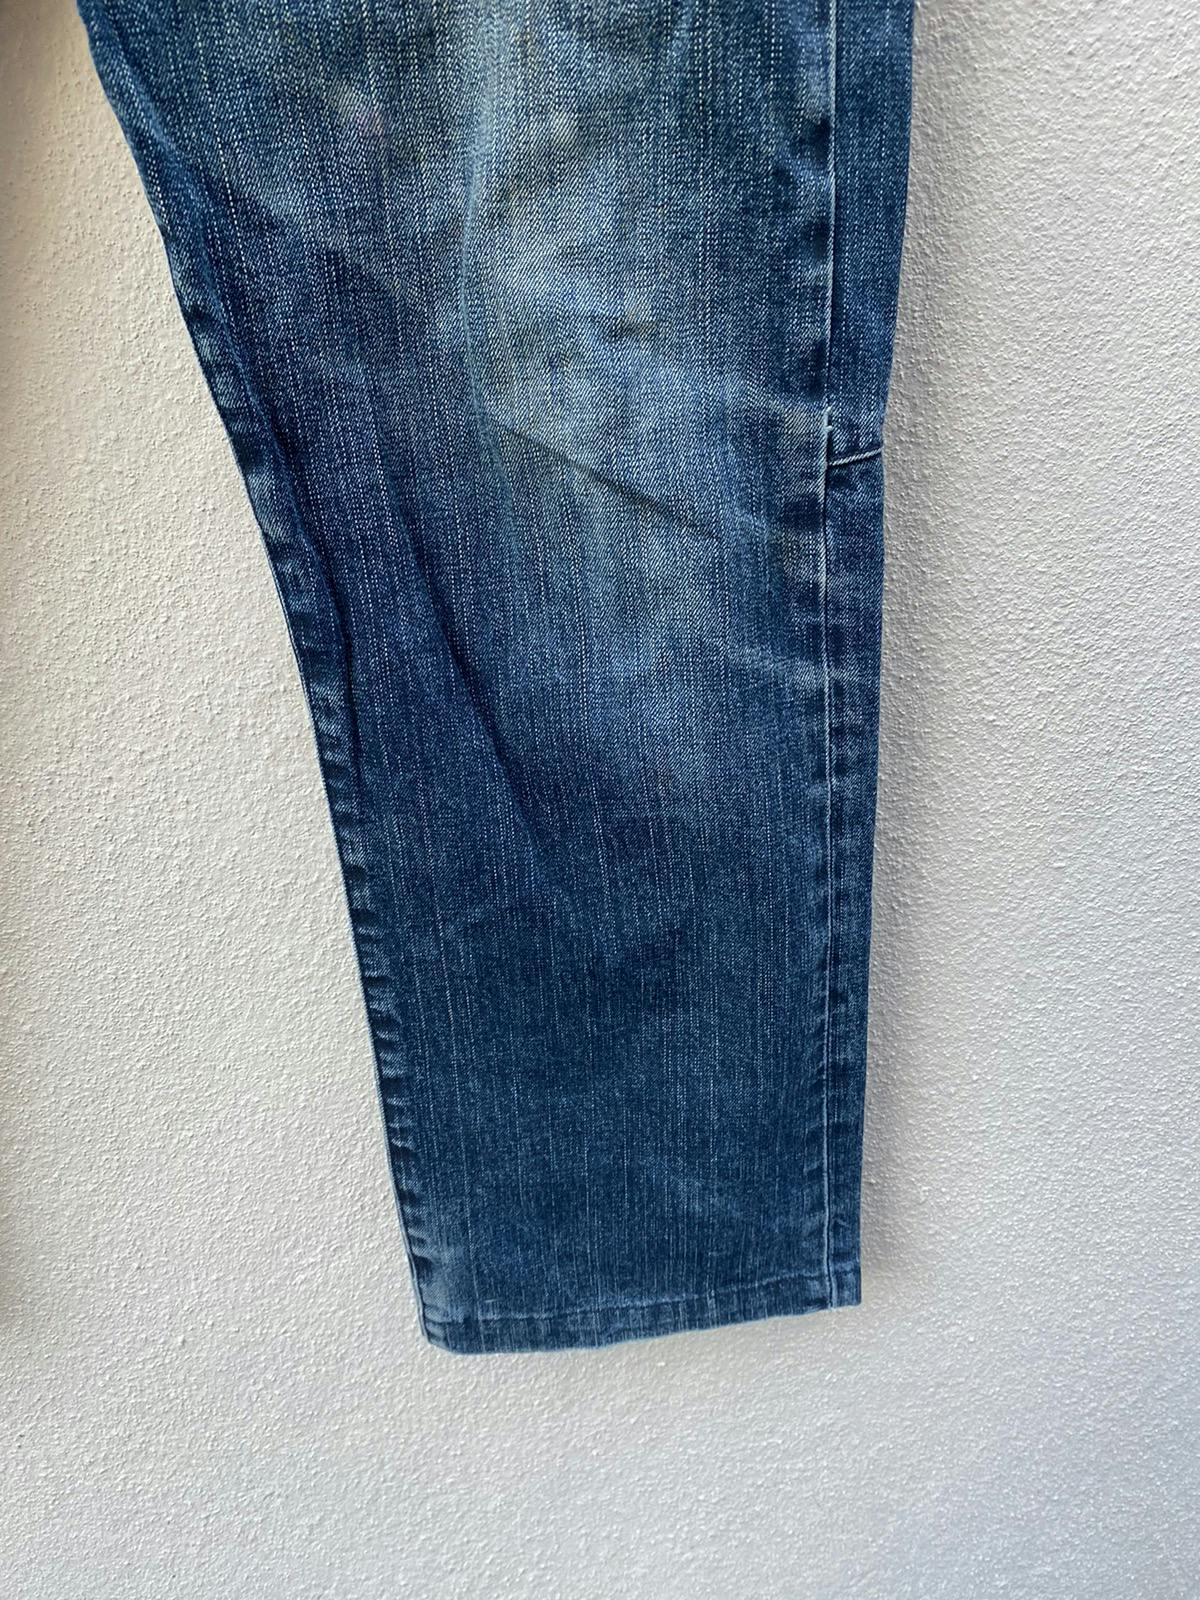 AW 04 Stone Island Denims Jeans - 5